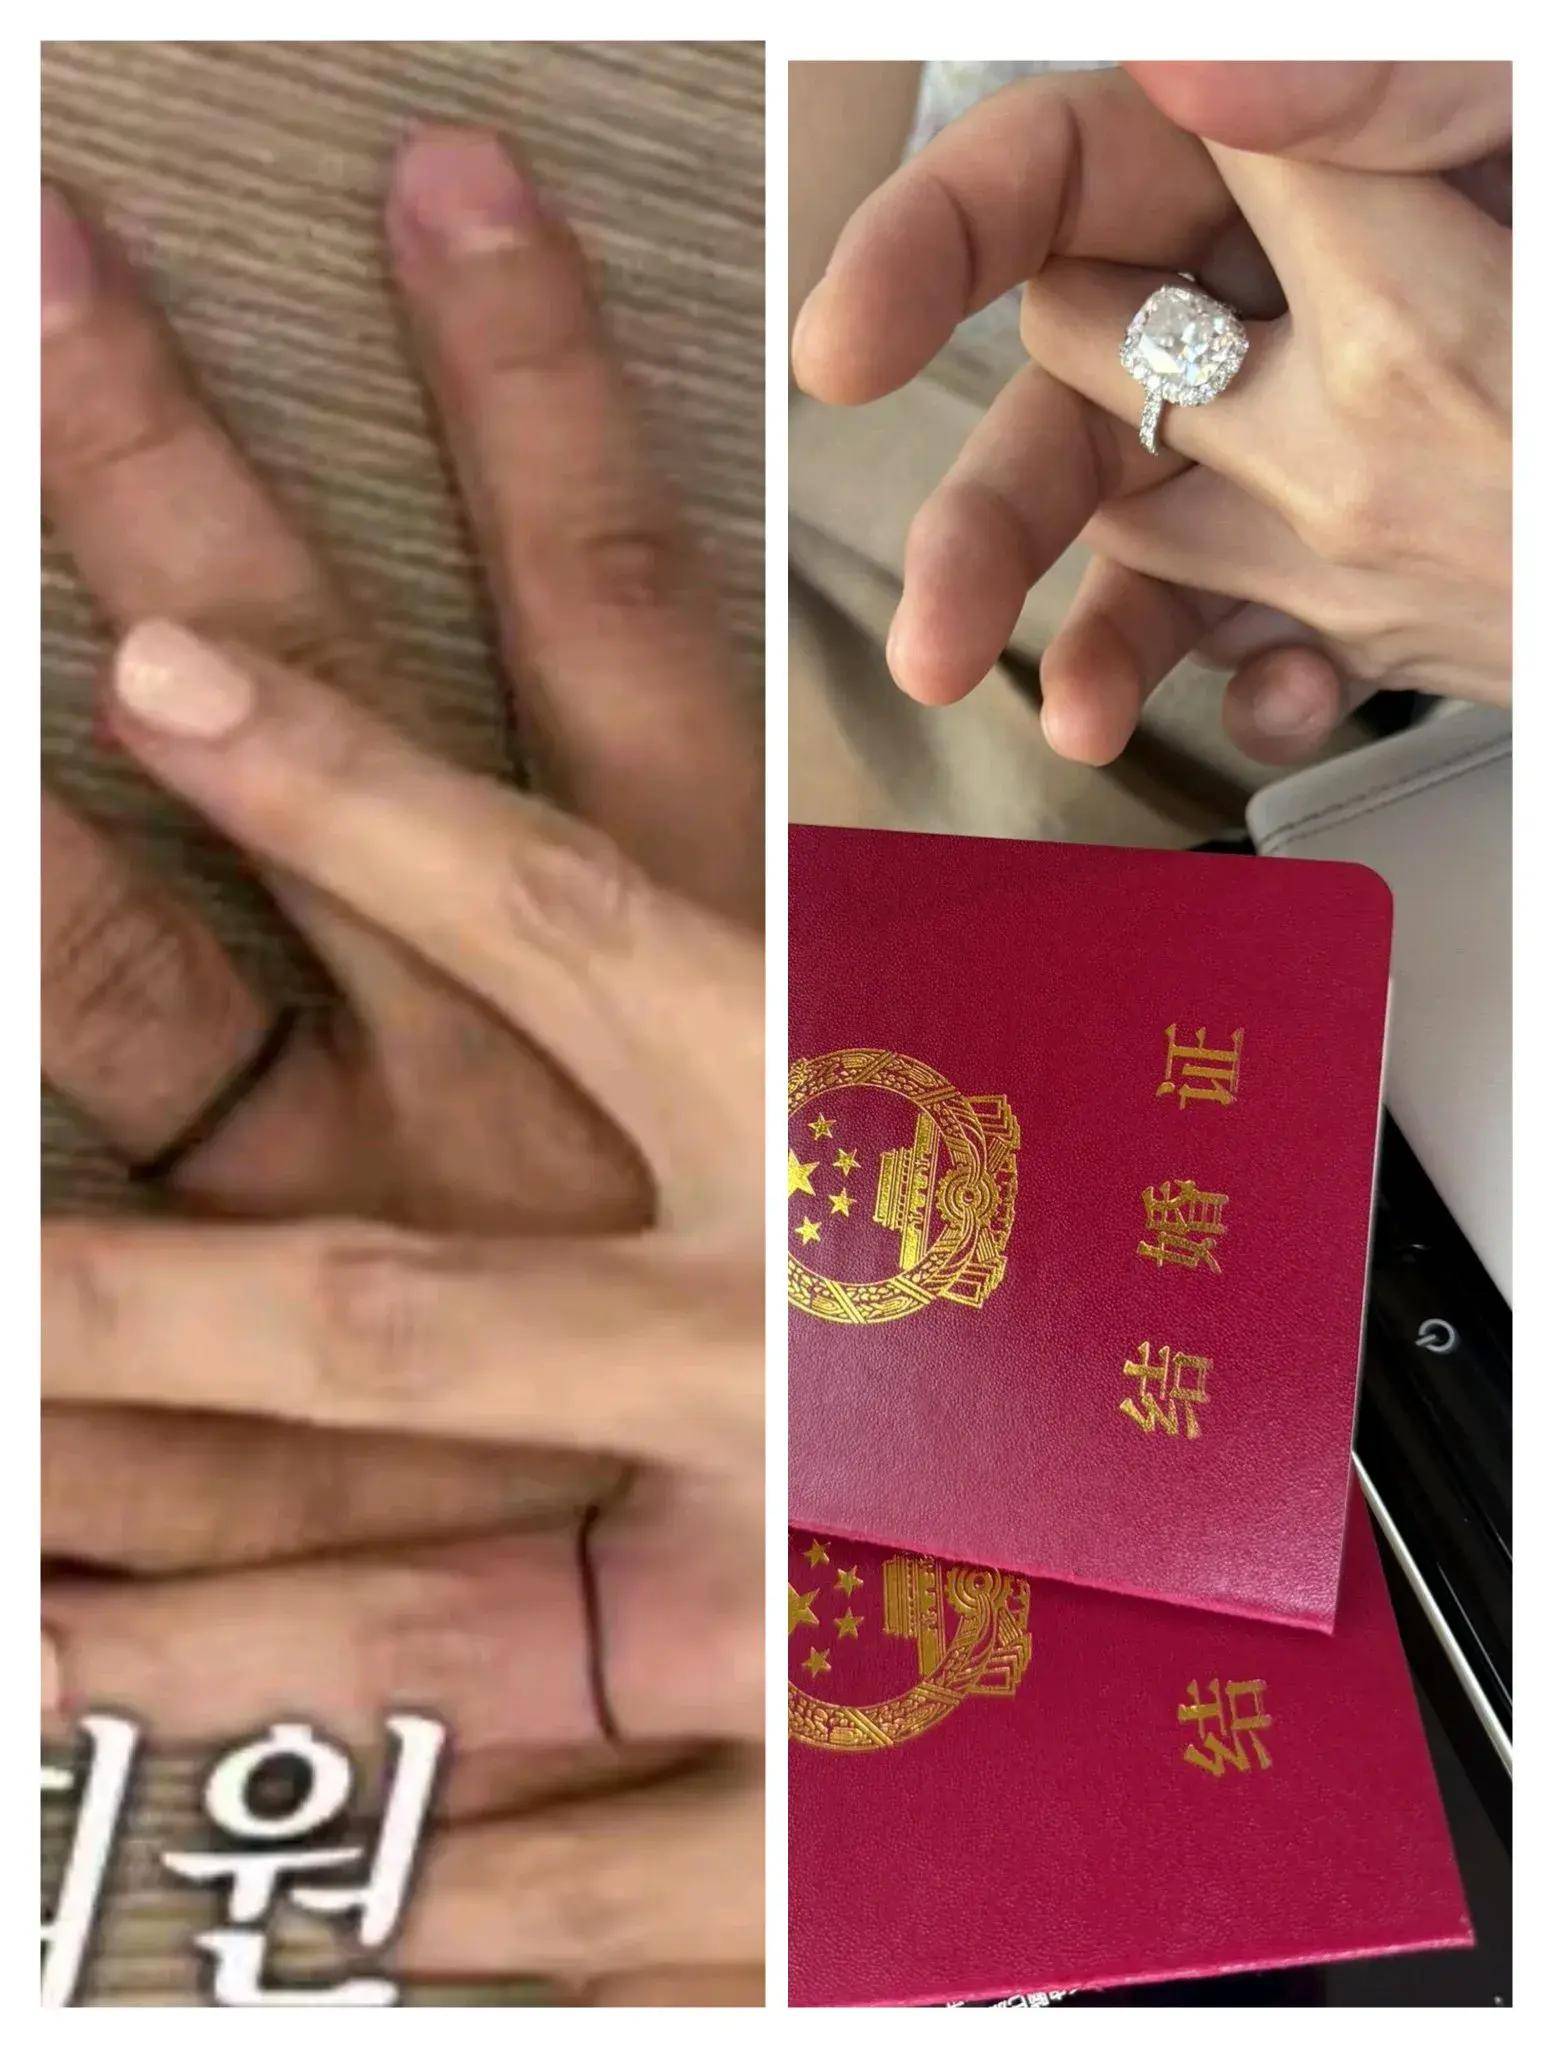 汪小菲在社交平台晒结婚证,送未婚妻70万钻戒冲上热搜